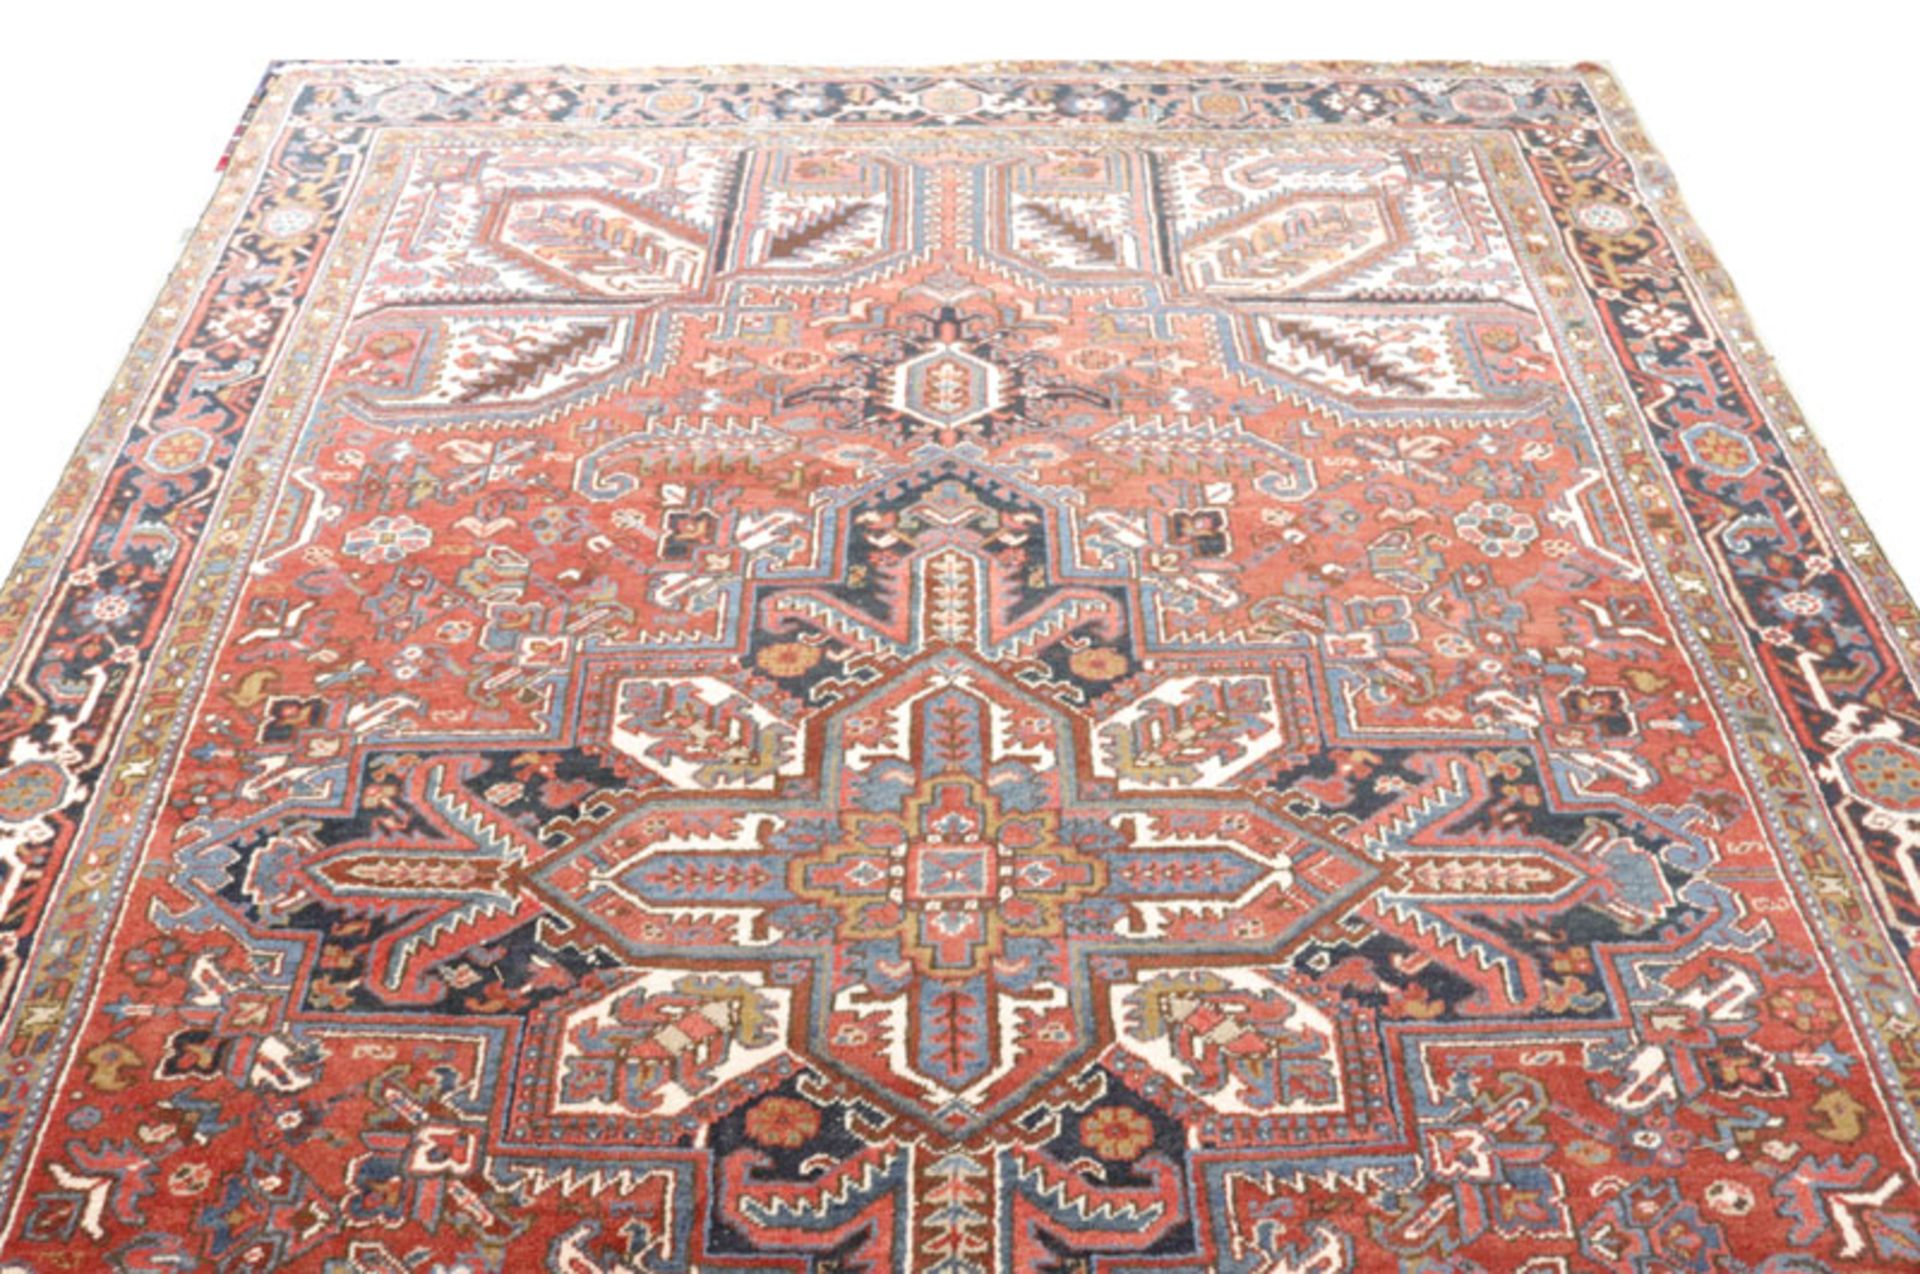 Teppich, Heriz, rot/braun/blau, Gebrauchsspuren, 344 cm x 237 cm